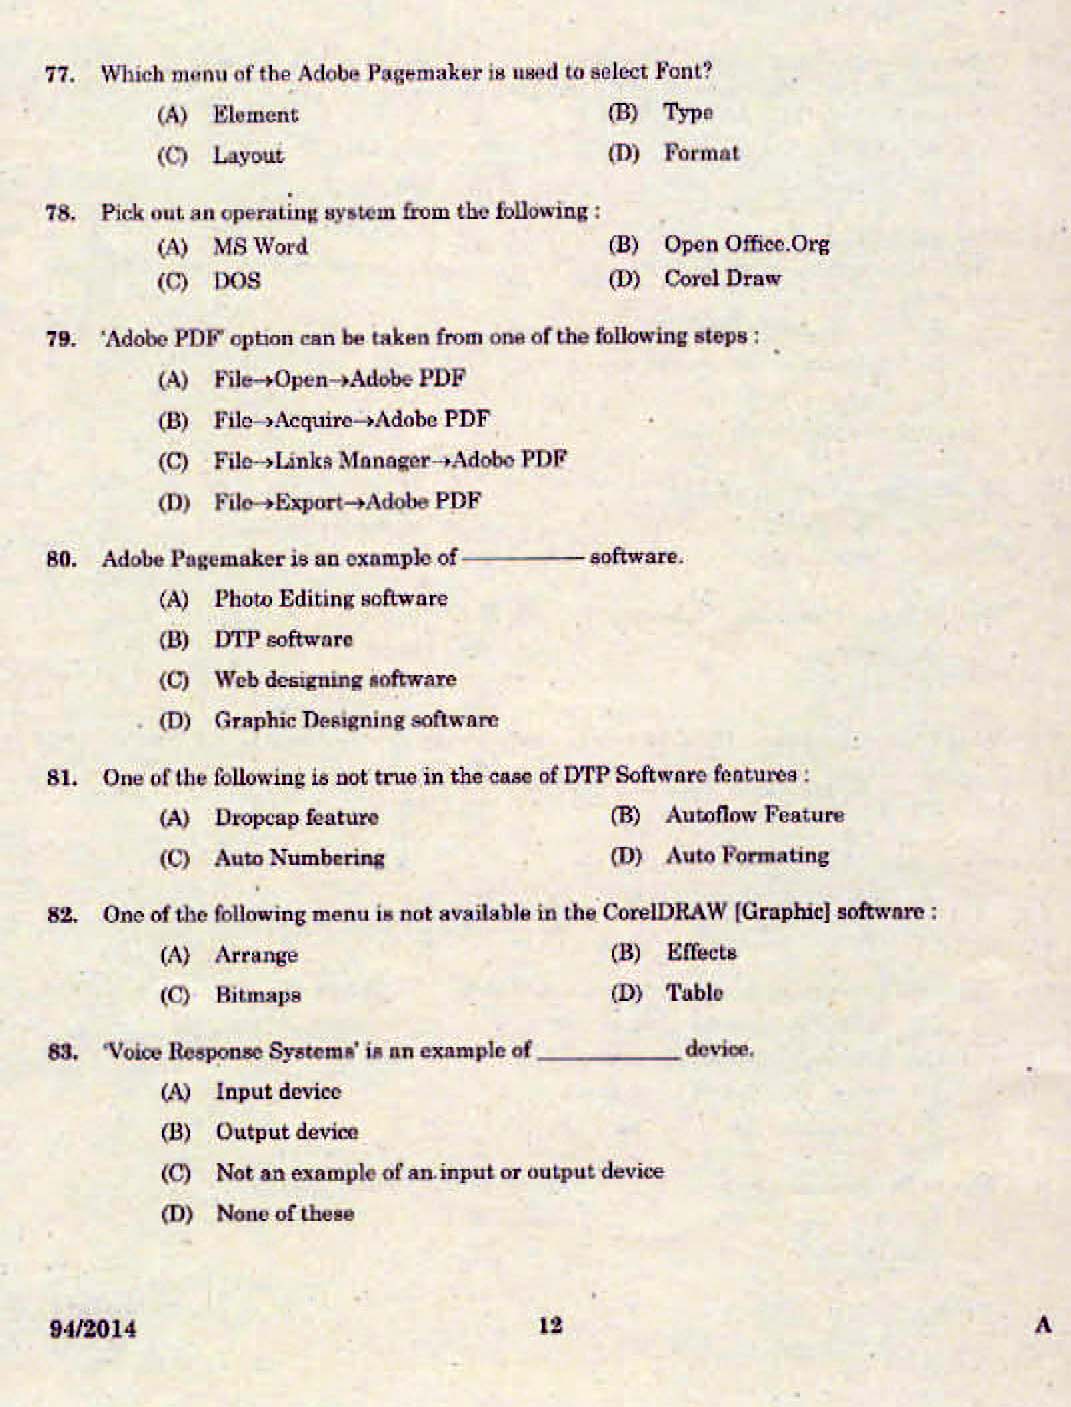 Kerala PSC Junior Assistant Exam 2014 Question Paper Code 942014 10